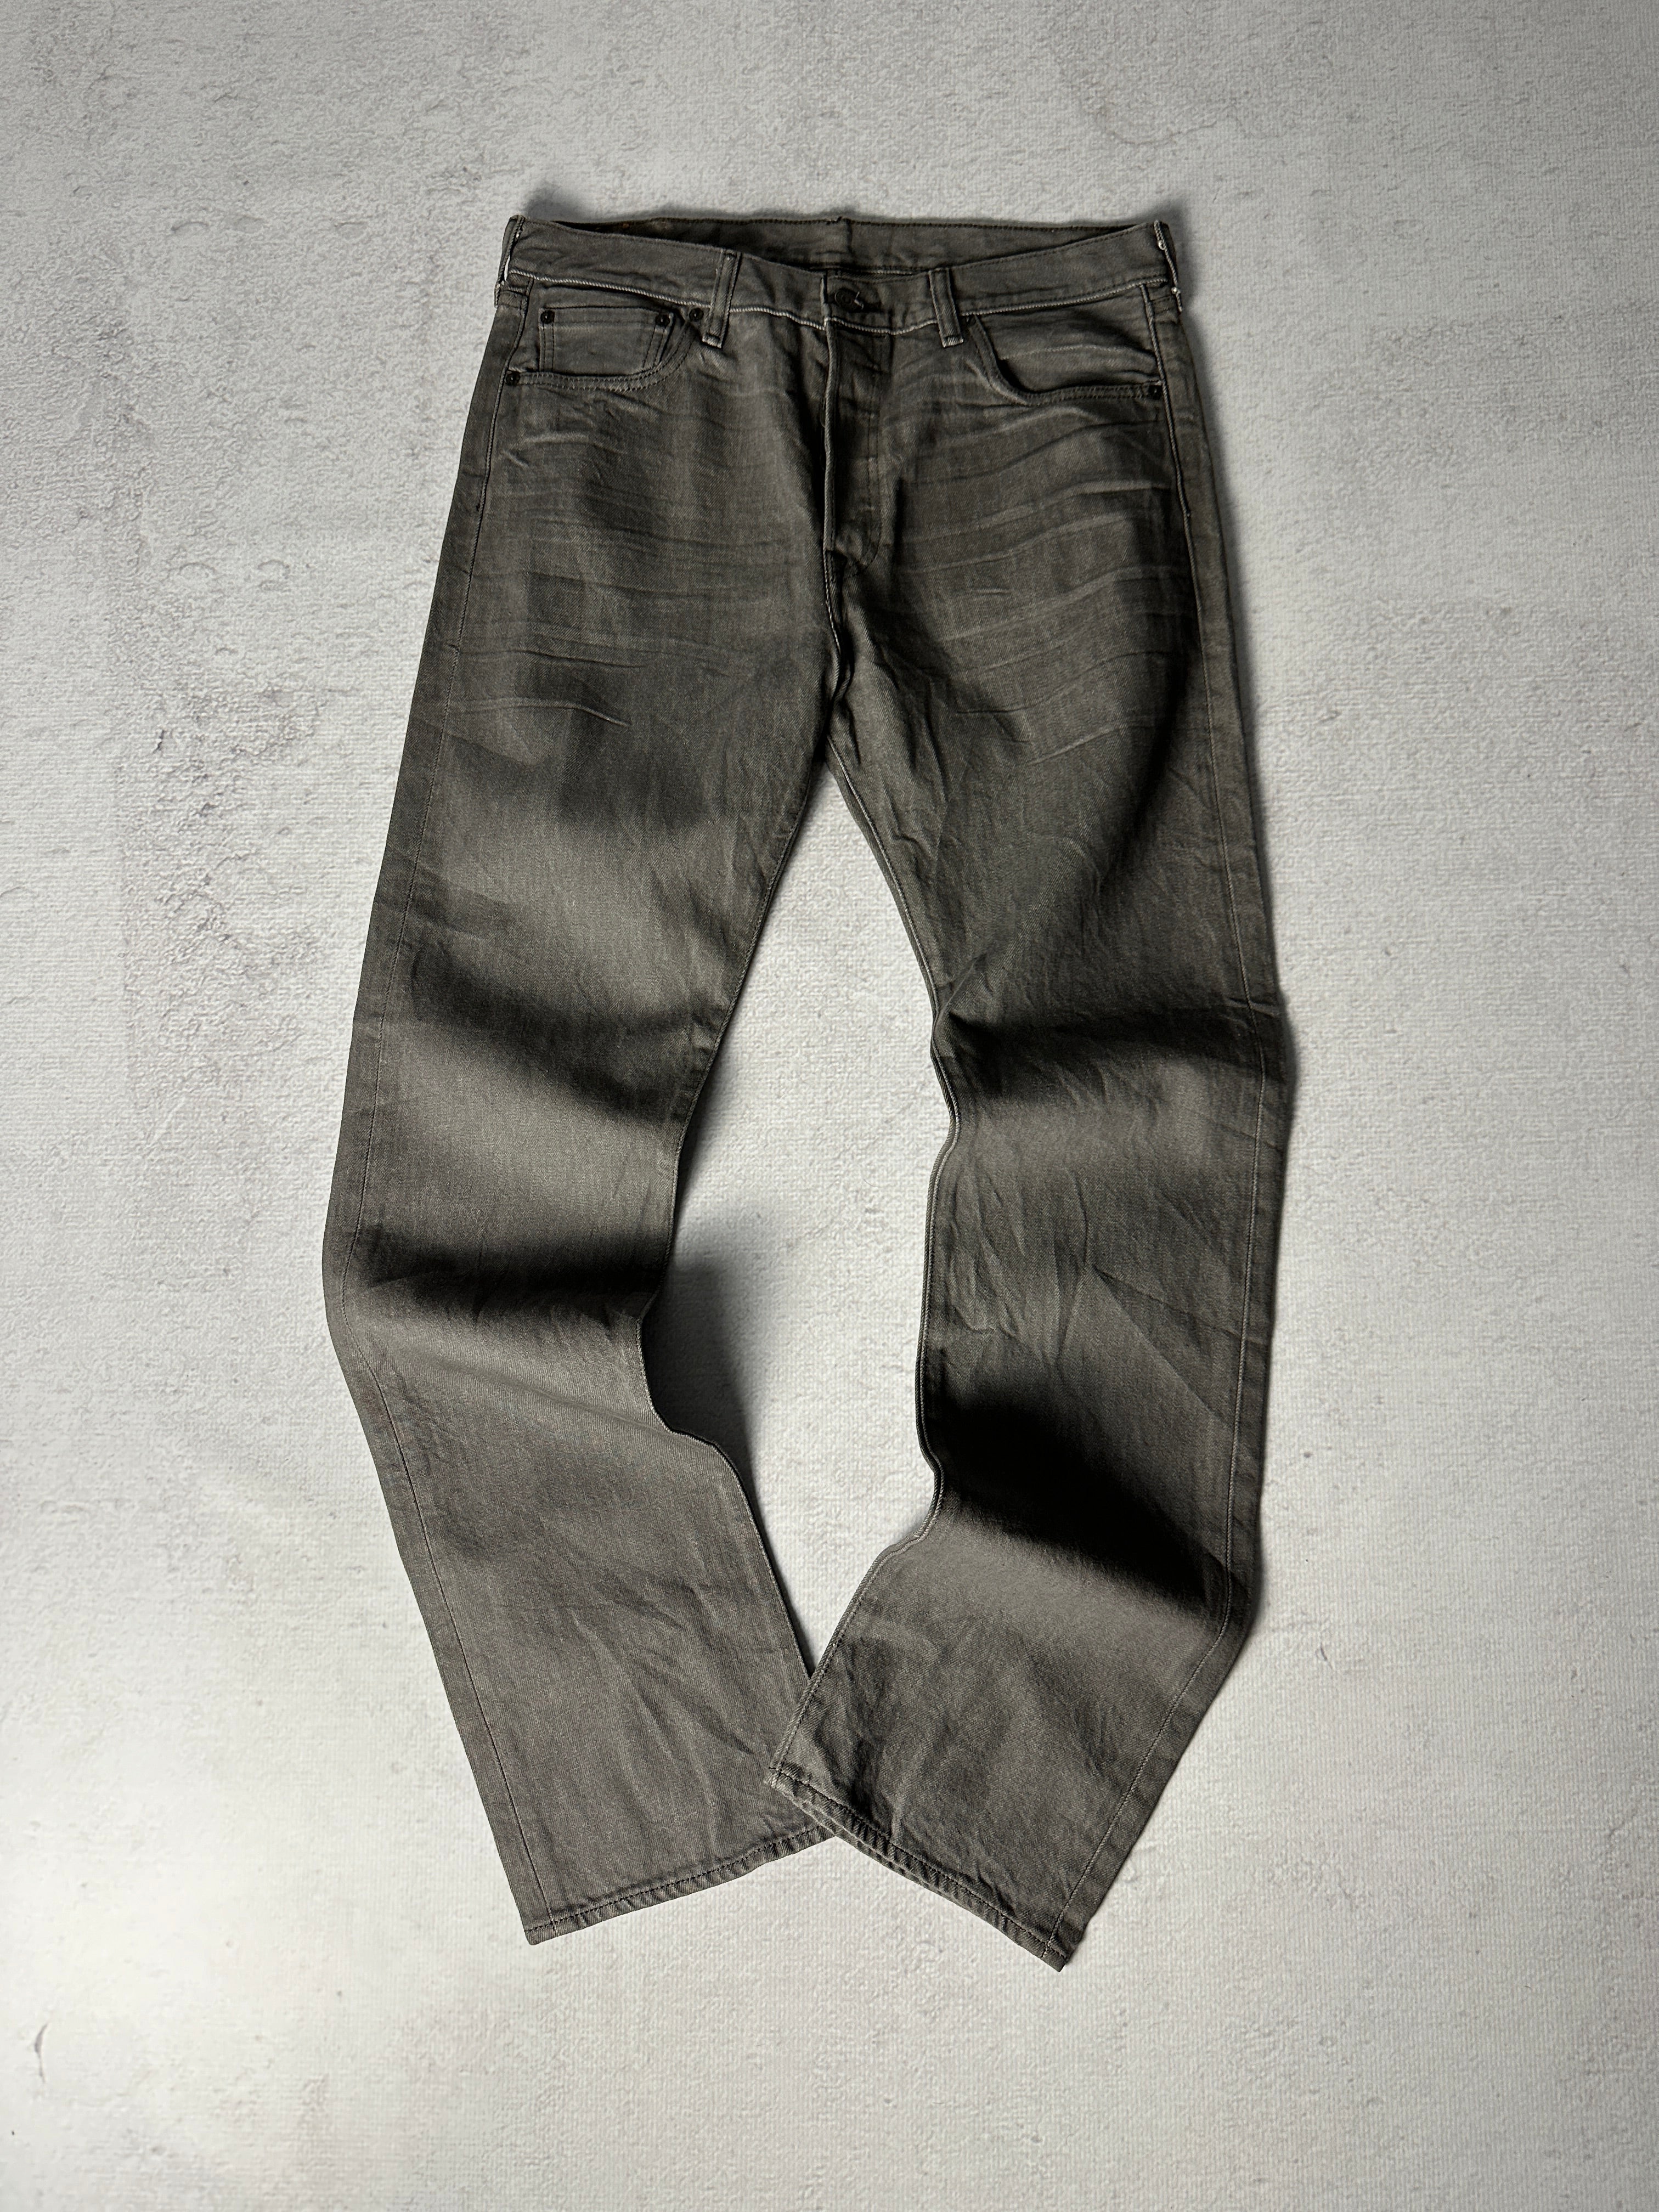 Vintage Levis 501 Jeans - Men's 34W34L